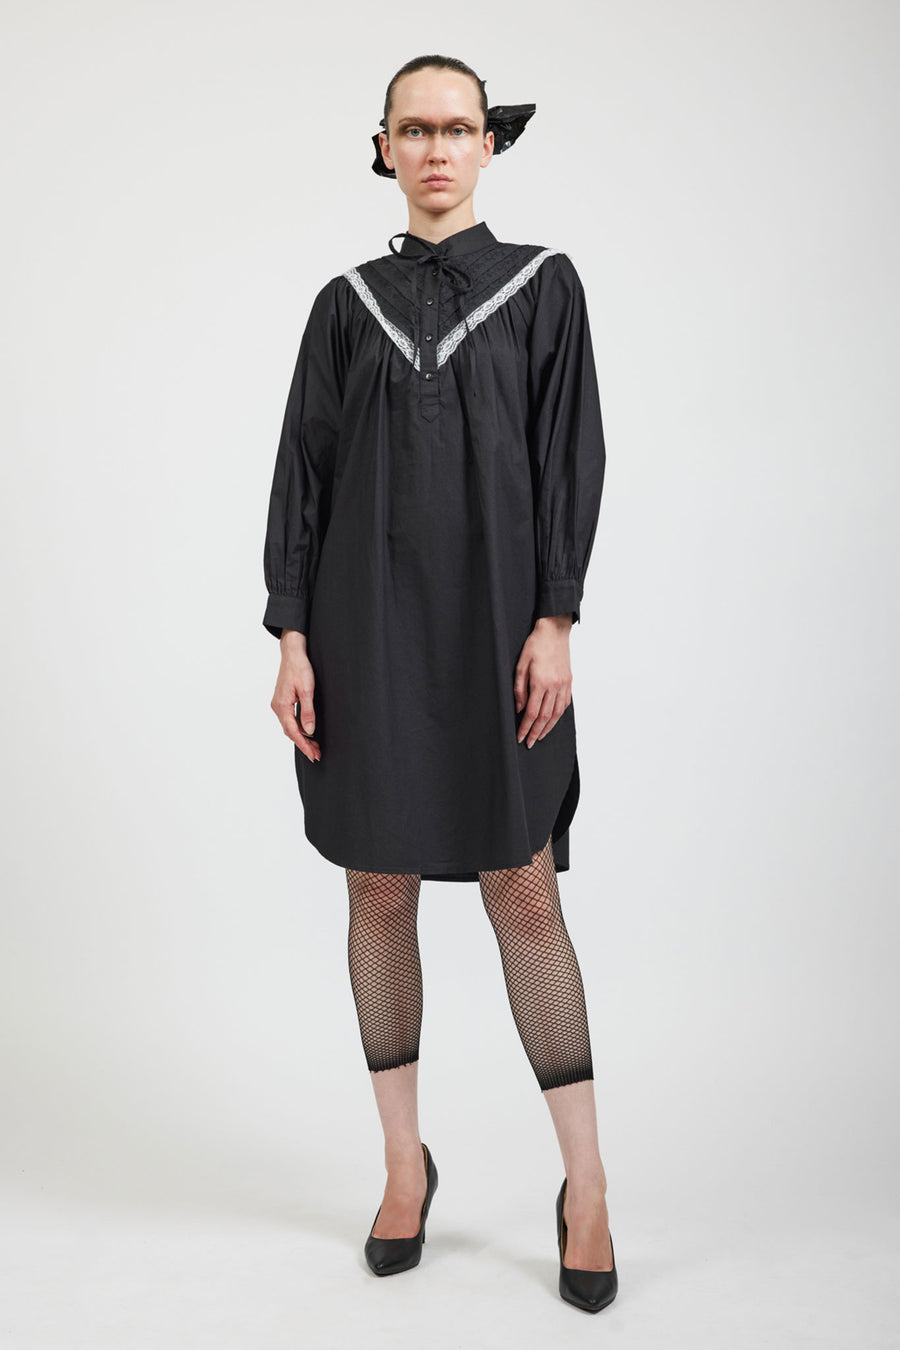 BATSHEVA - Landry Lace Dress in Black